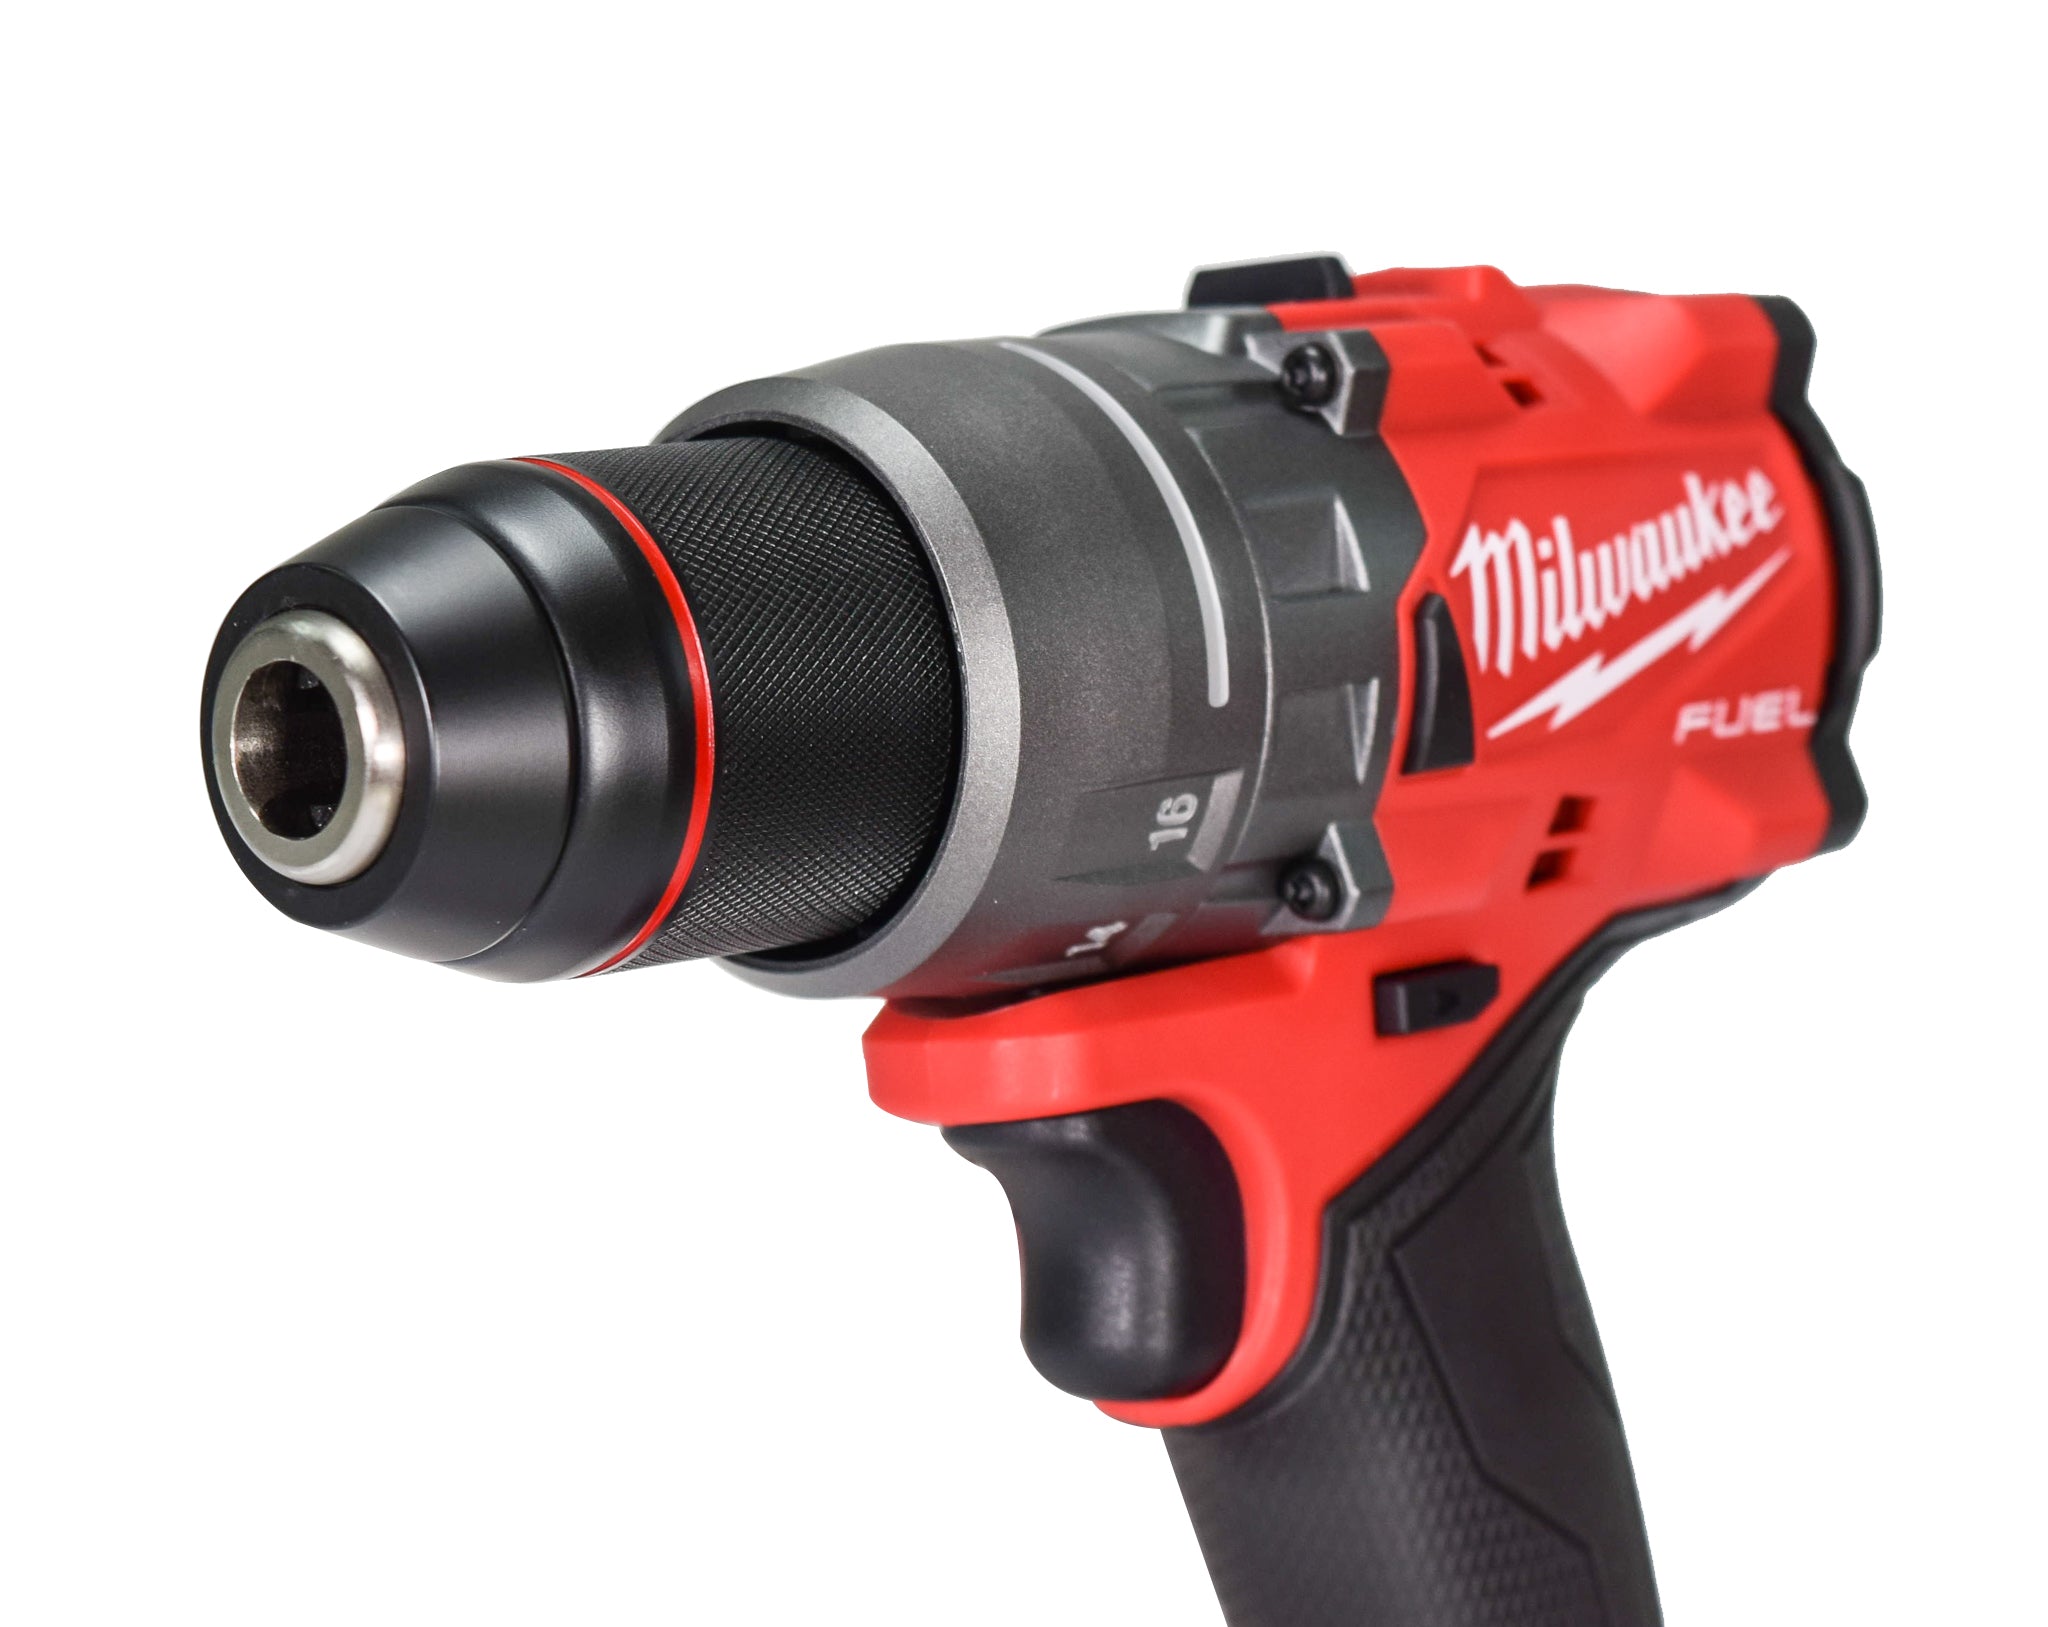 Milwaukee 2903-22 M18 18V Brushless Cordless 1/2" Drill/Driver Kit